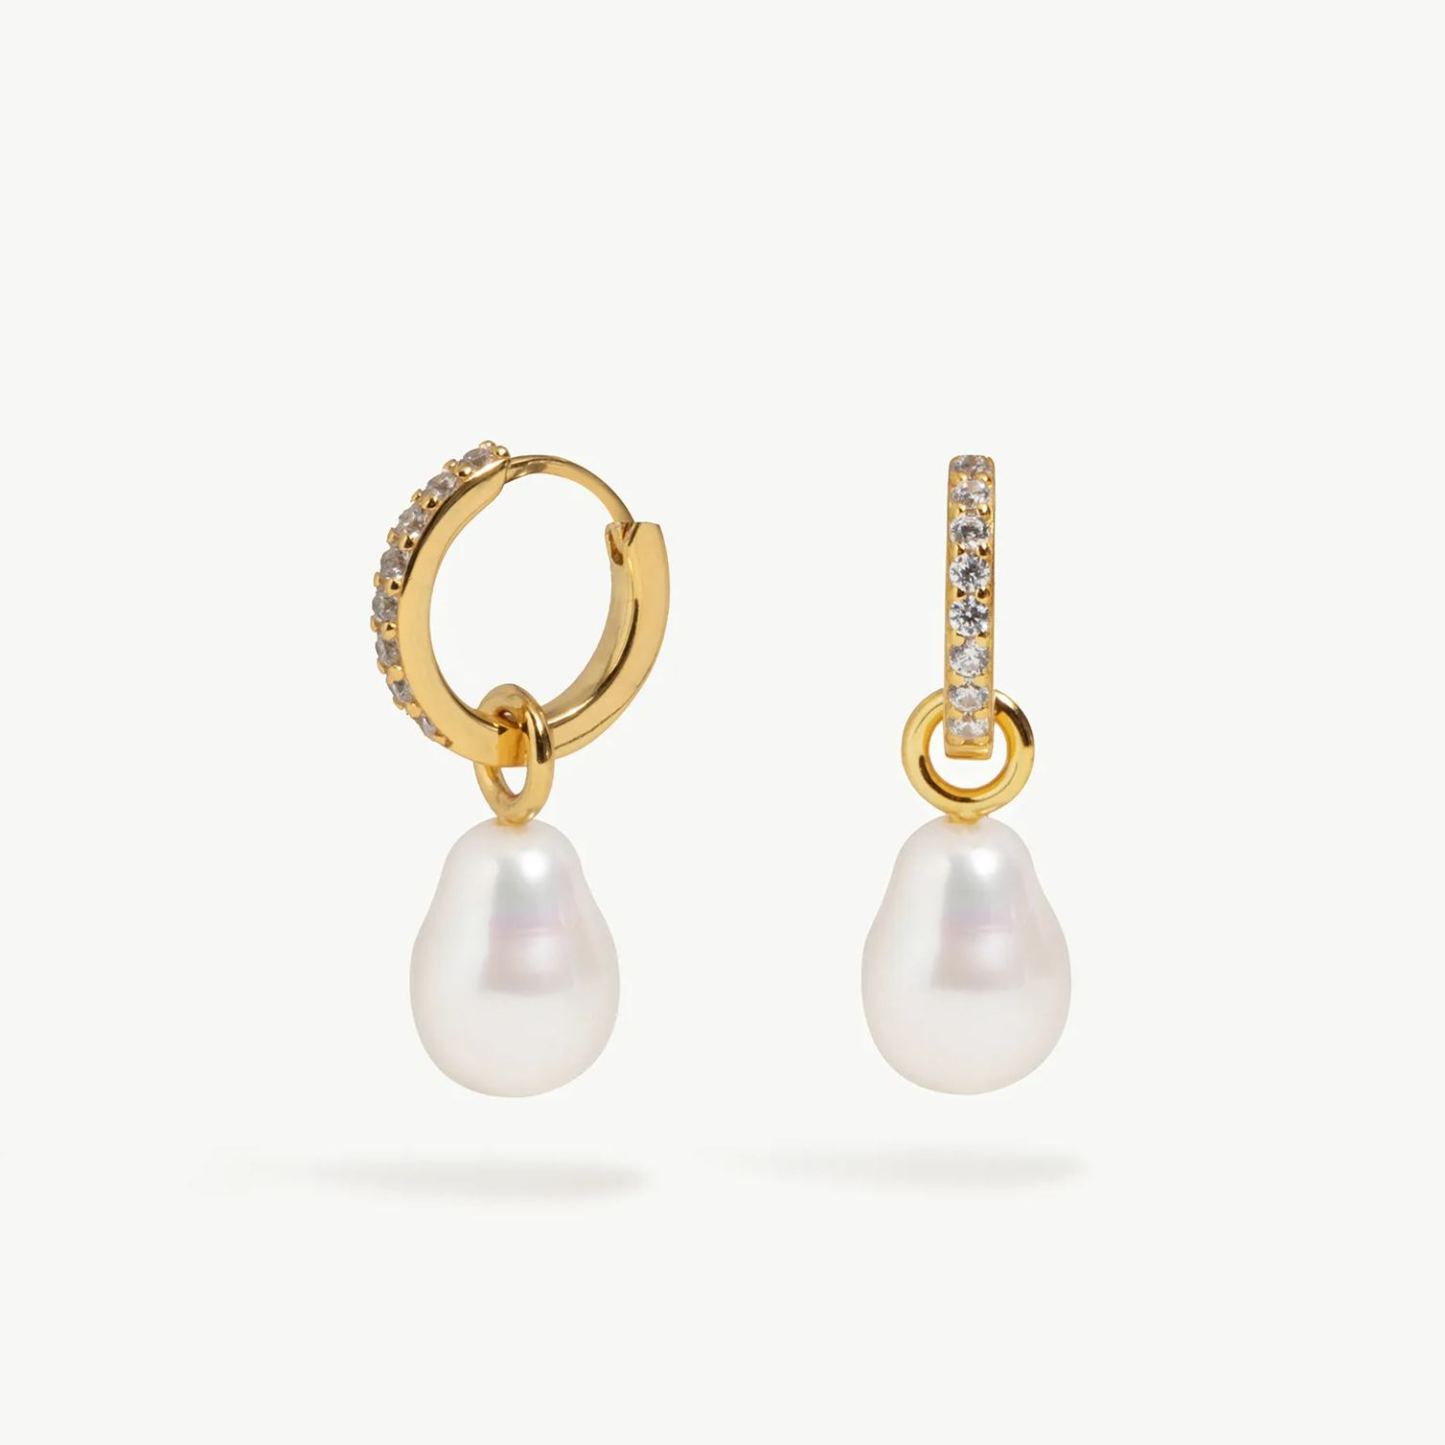 Buy 18 Karat Gold Gemstone Charms Hoop Earrings for Women